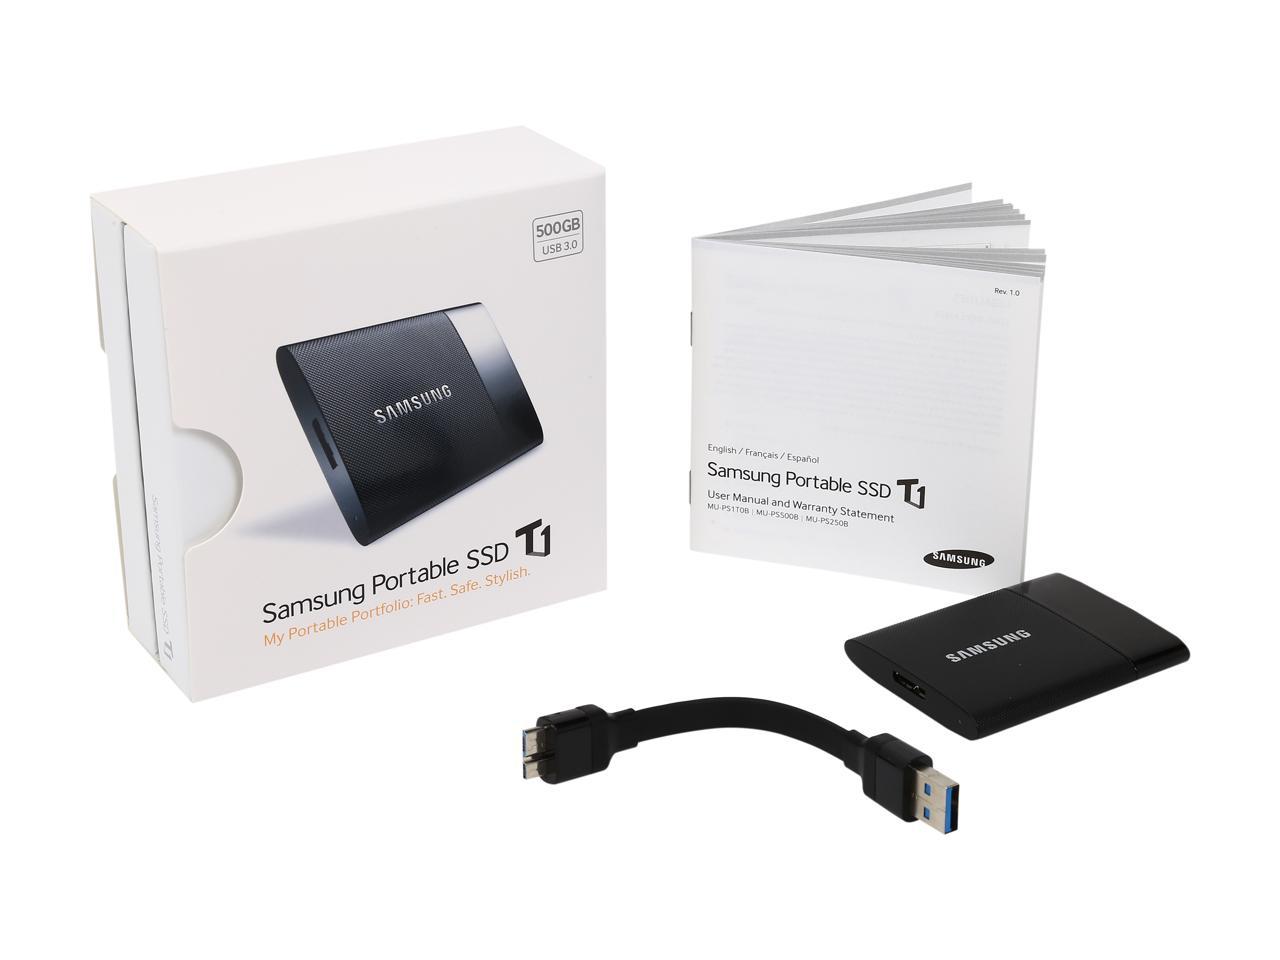 DISCONTINUED MU-PS500B/AM Samsung T1 Portable 500GB USB 3.0 External SSD 